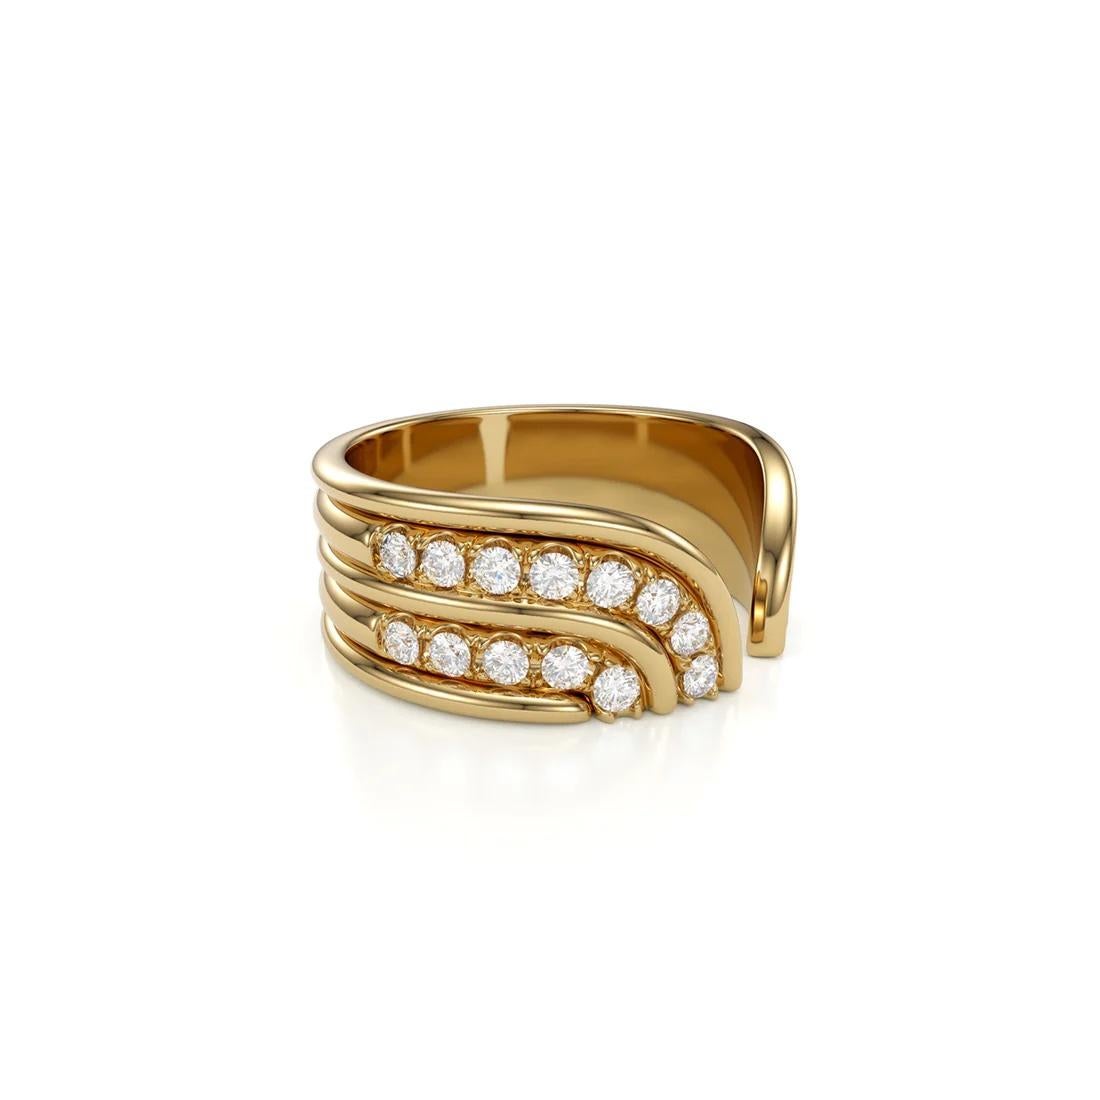 Dieser moderne und dennoch minimalistische Ring strahlt Chic und Eleganz aus. Der sorgfältig gefertigte Ring ist mit abwechselnden Reihen gepflasterter Diamanten versehen, die sich nahtlos um den Finger schlängeln und ihn anmutig umarmen. Dieses